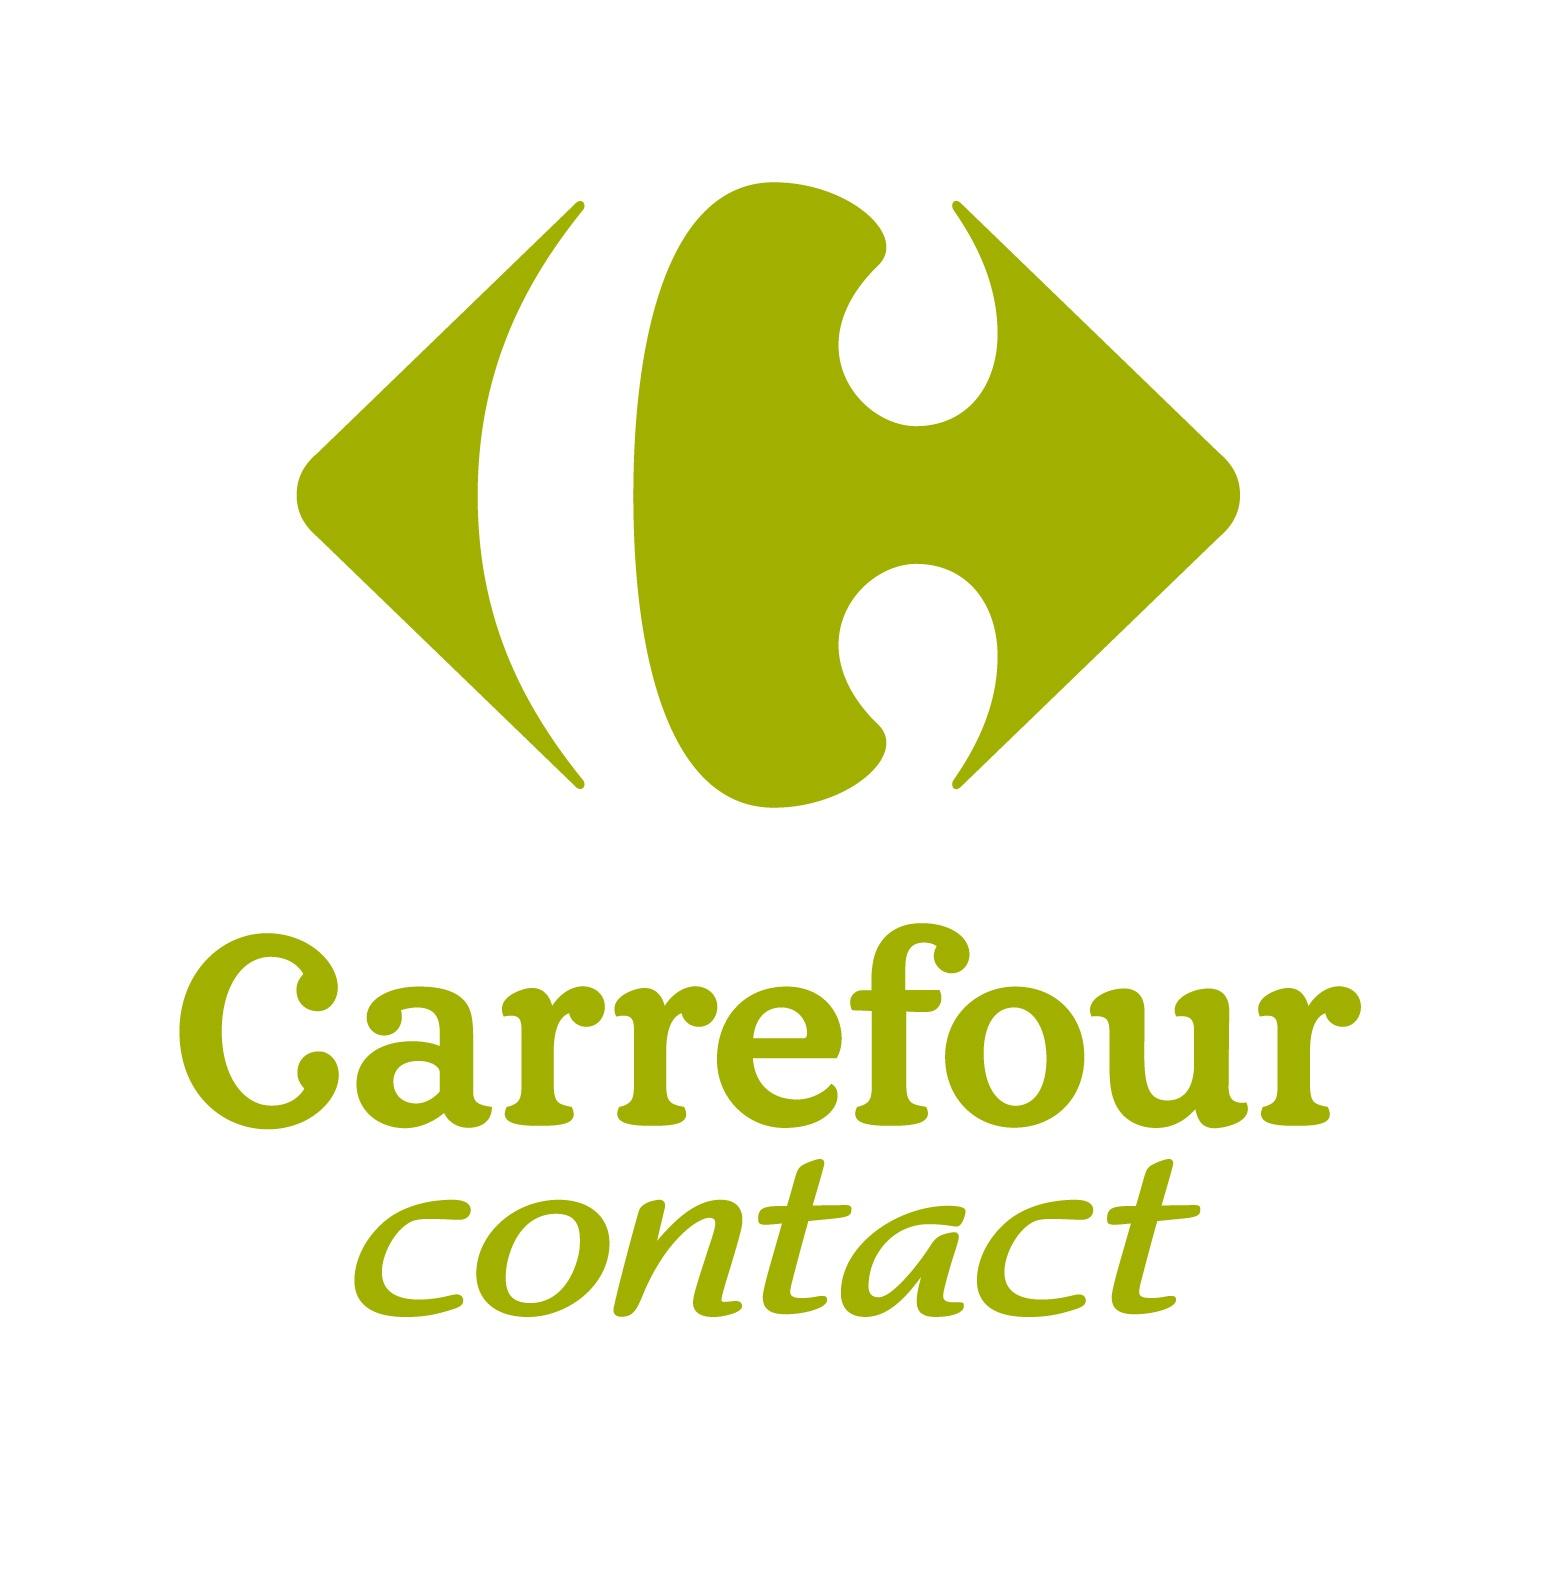 Carrefour Contact Villeneuve Saint Georges